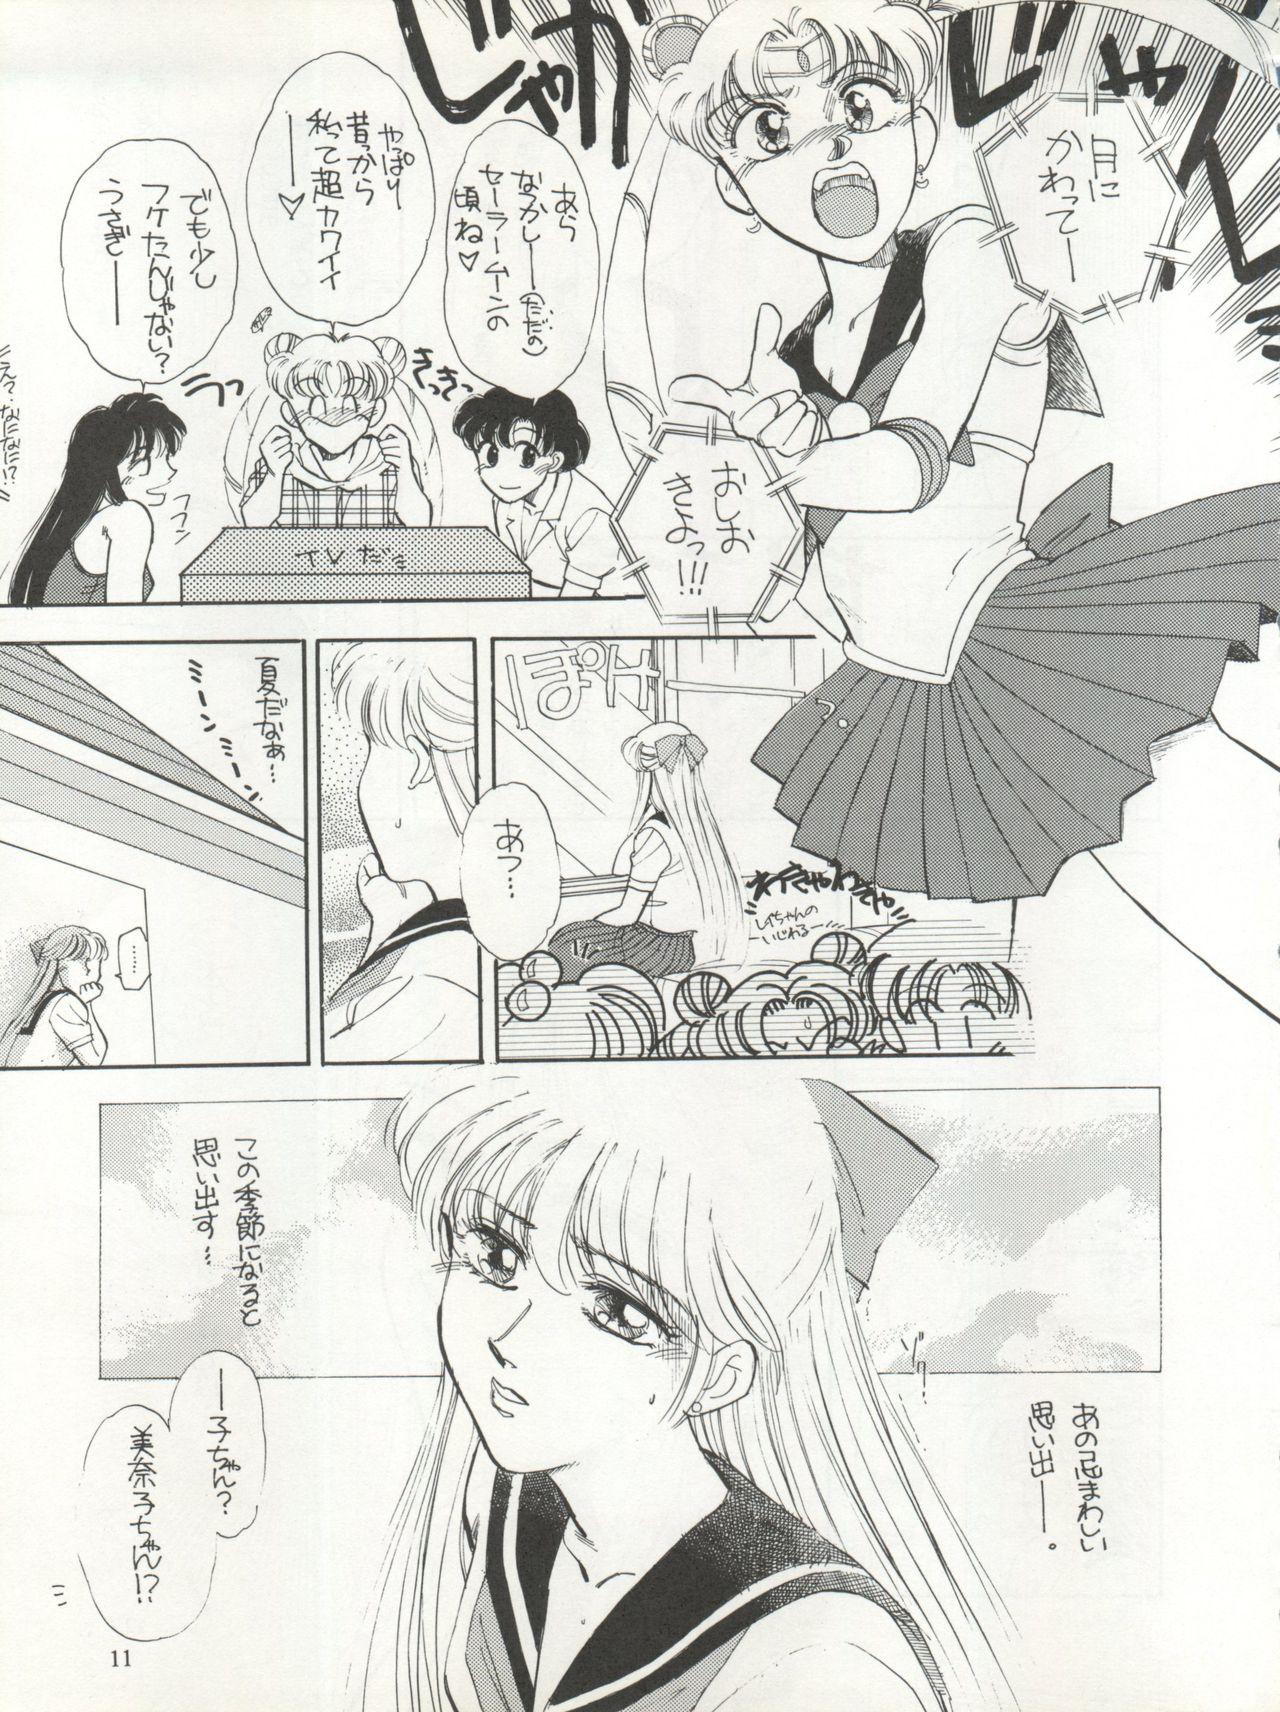 Pornstar Sekai Seifuku Sailor Fuku 5 - Sailor moon Machine - Page 9